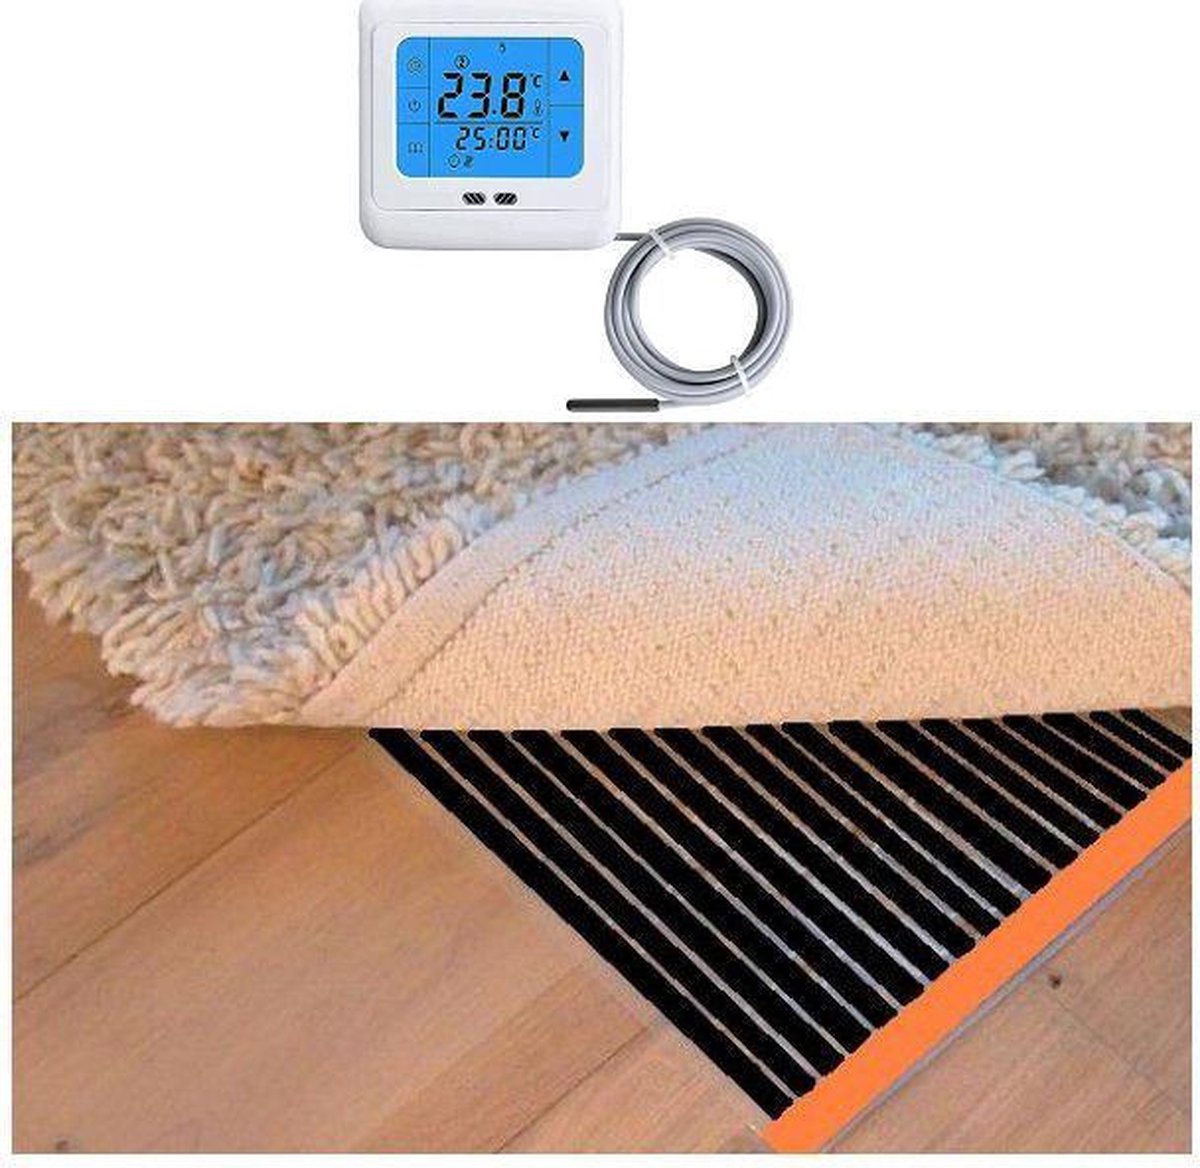 Woonkamer verwarmingsfolie infrarood folie voor vloerbedekking, tapijten vloerkleden elektrisch met TH 89 thermostaat 100 cm x 450 cm 720 Watt